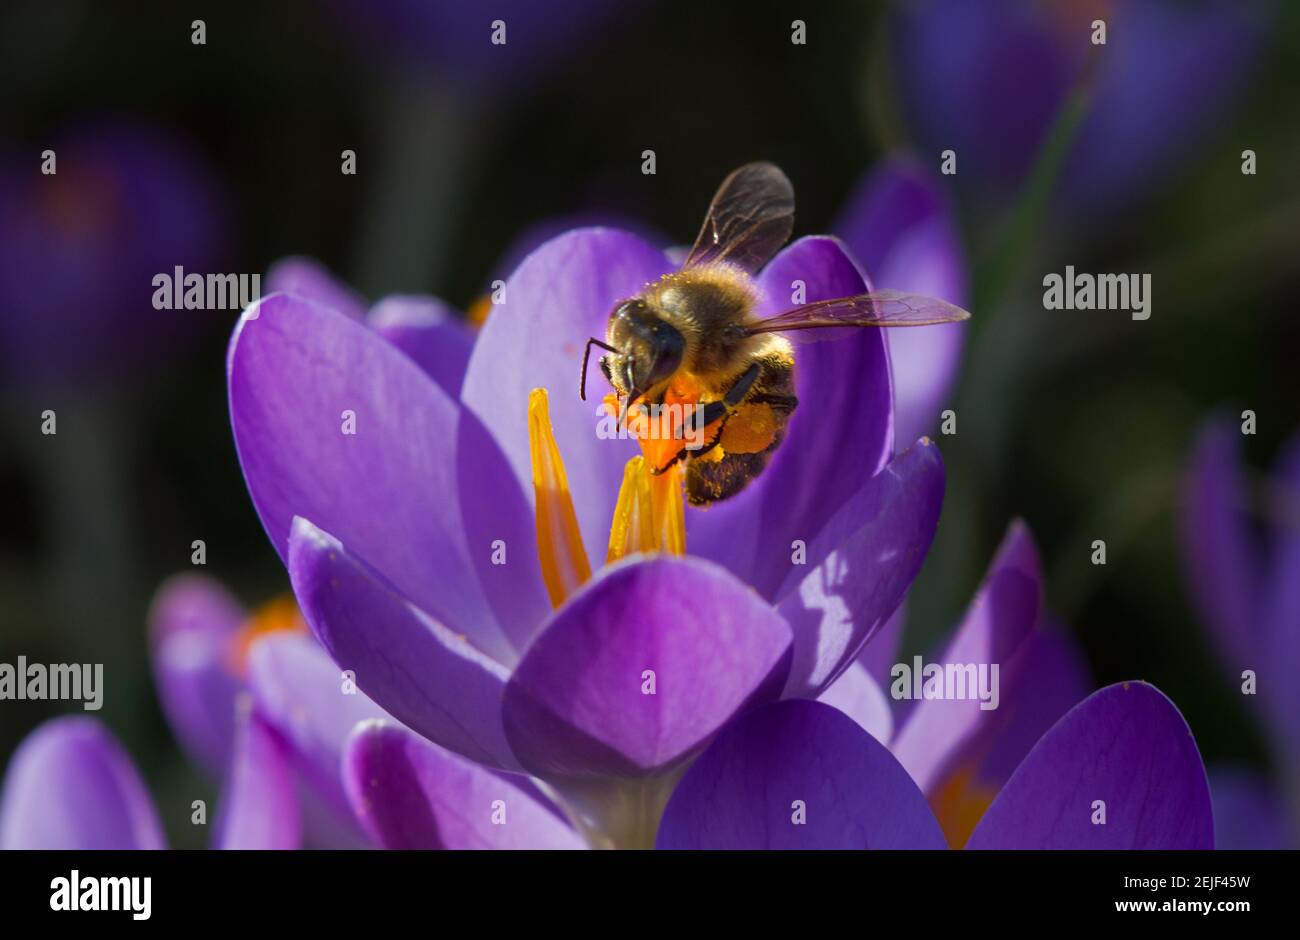 Impollinazione: Ape di miele su croccus viola con stampini color zafferano Foto Stock